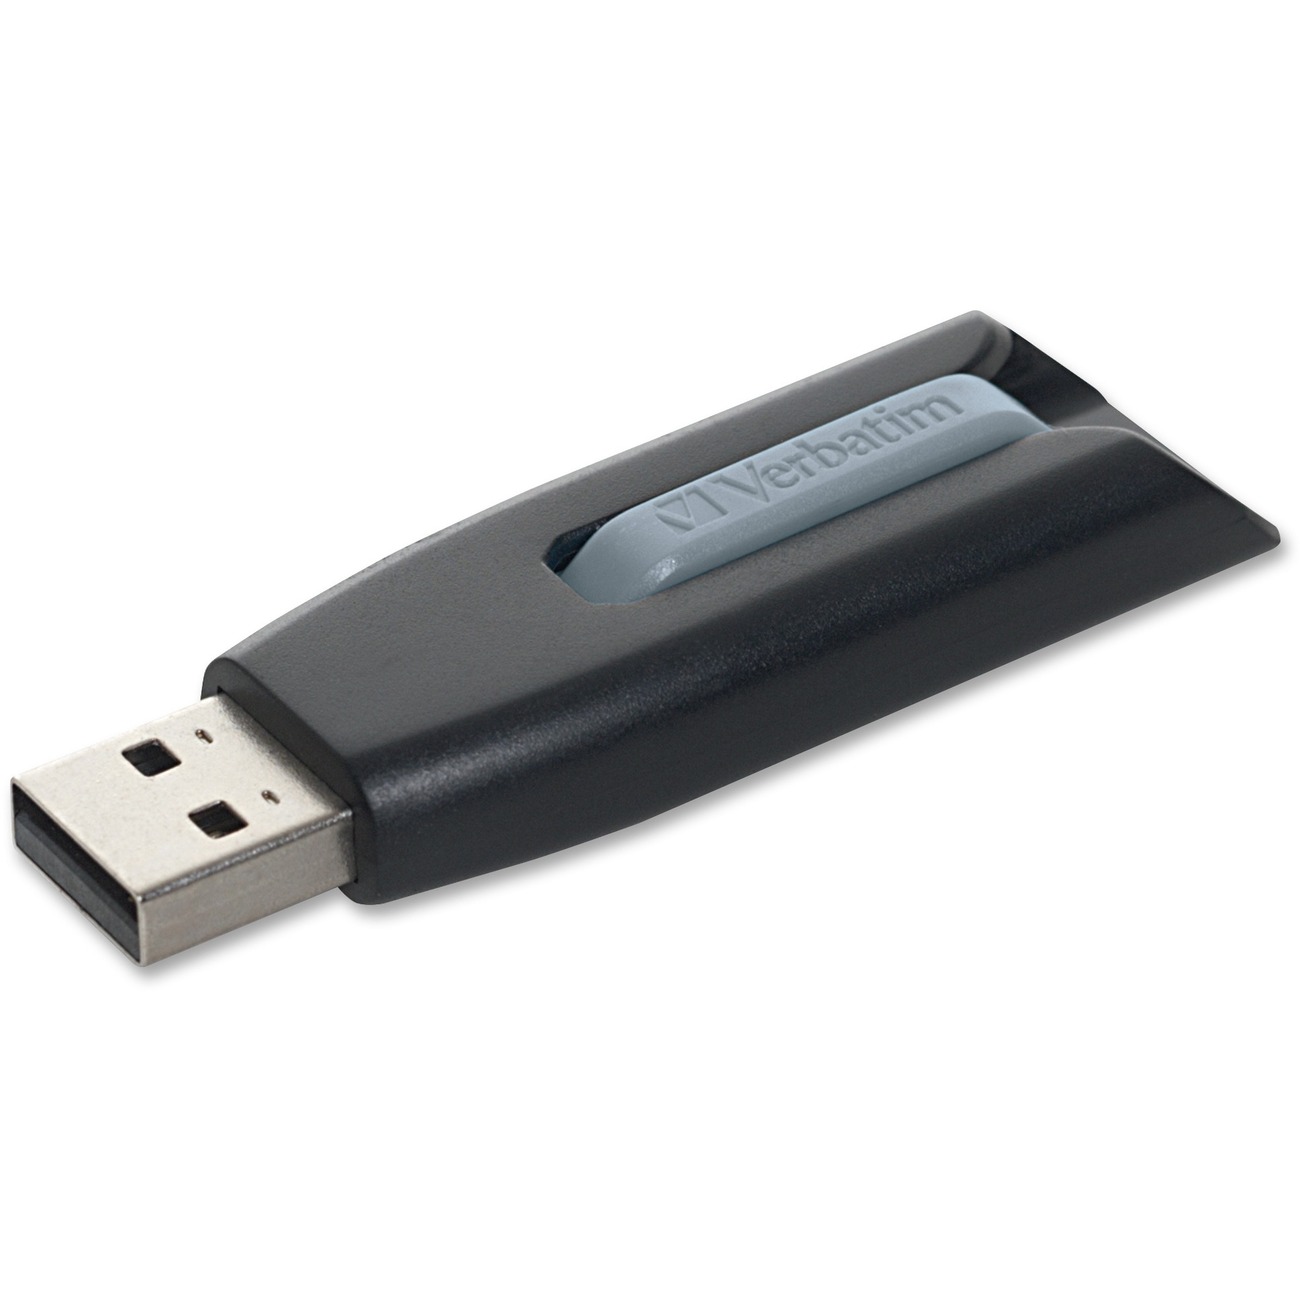 Xelibri Memories Go USB 3.0 64 GB Memoria Flash negro 